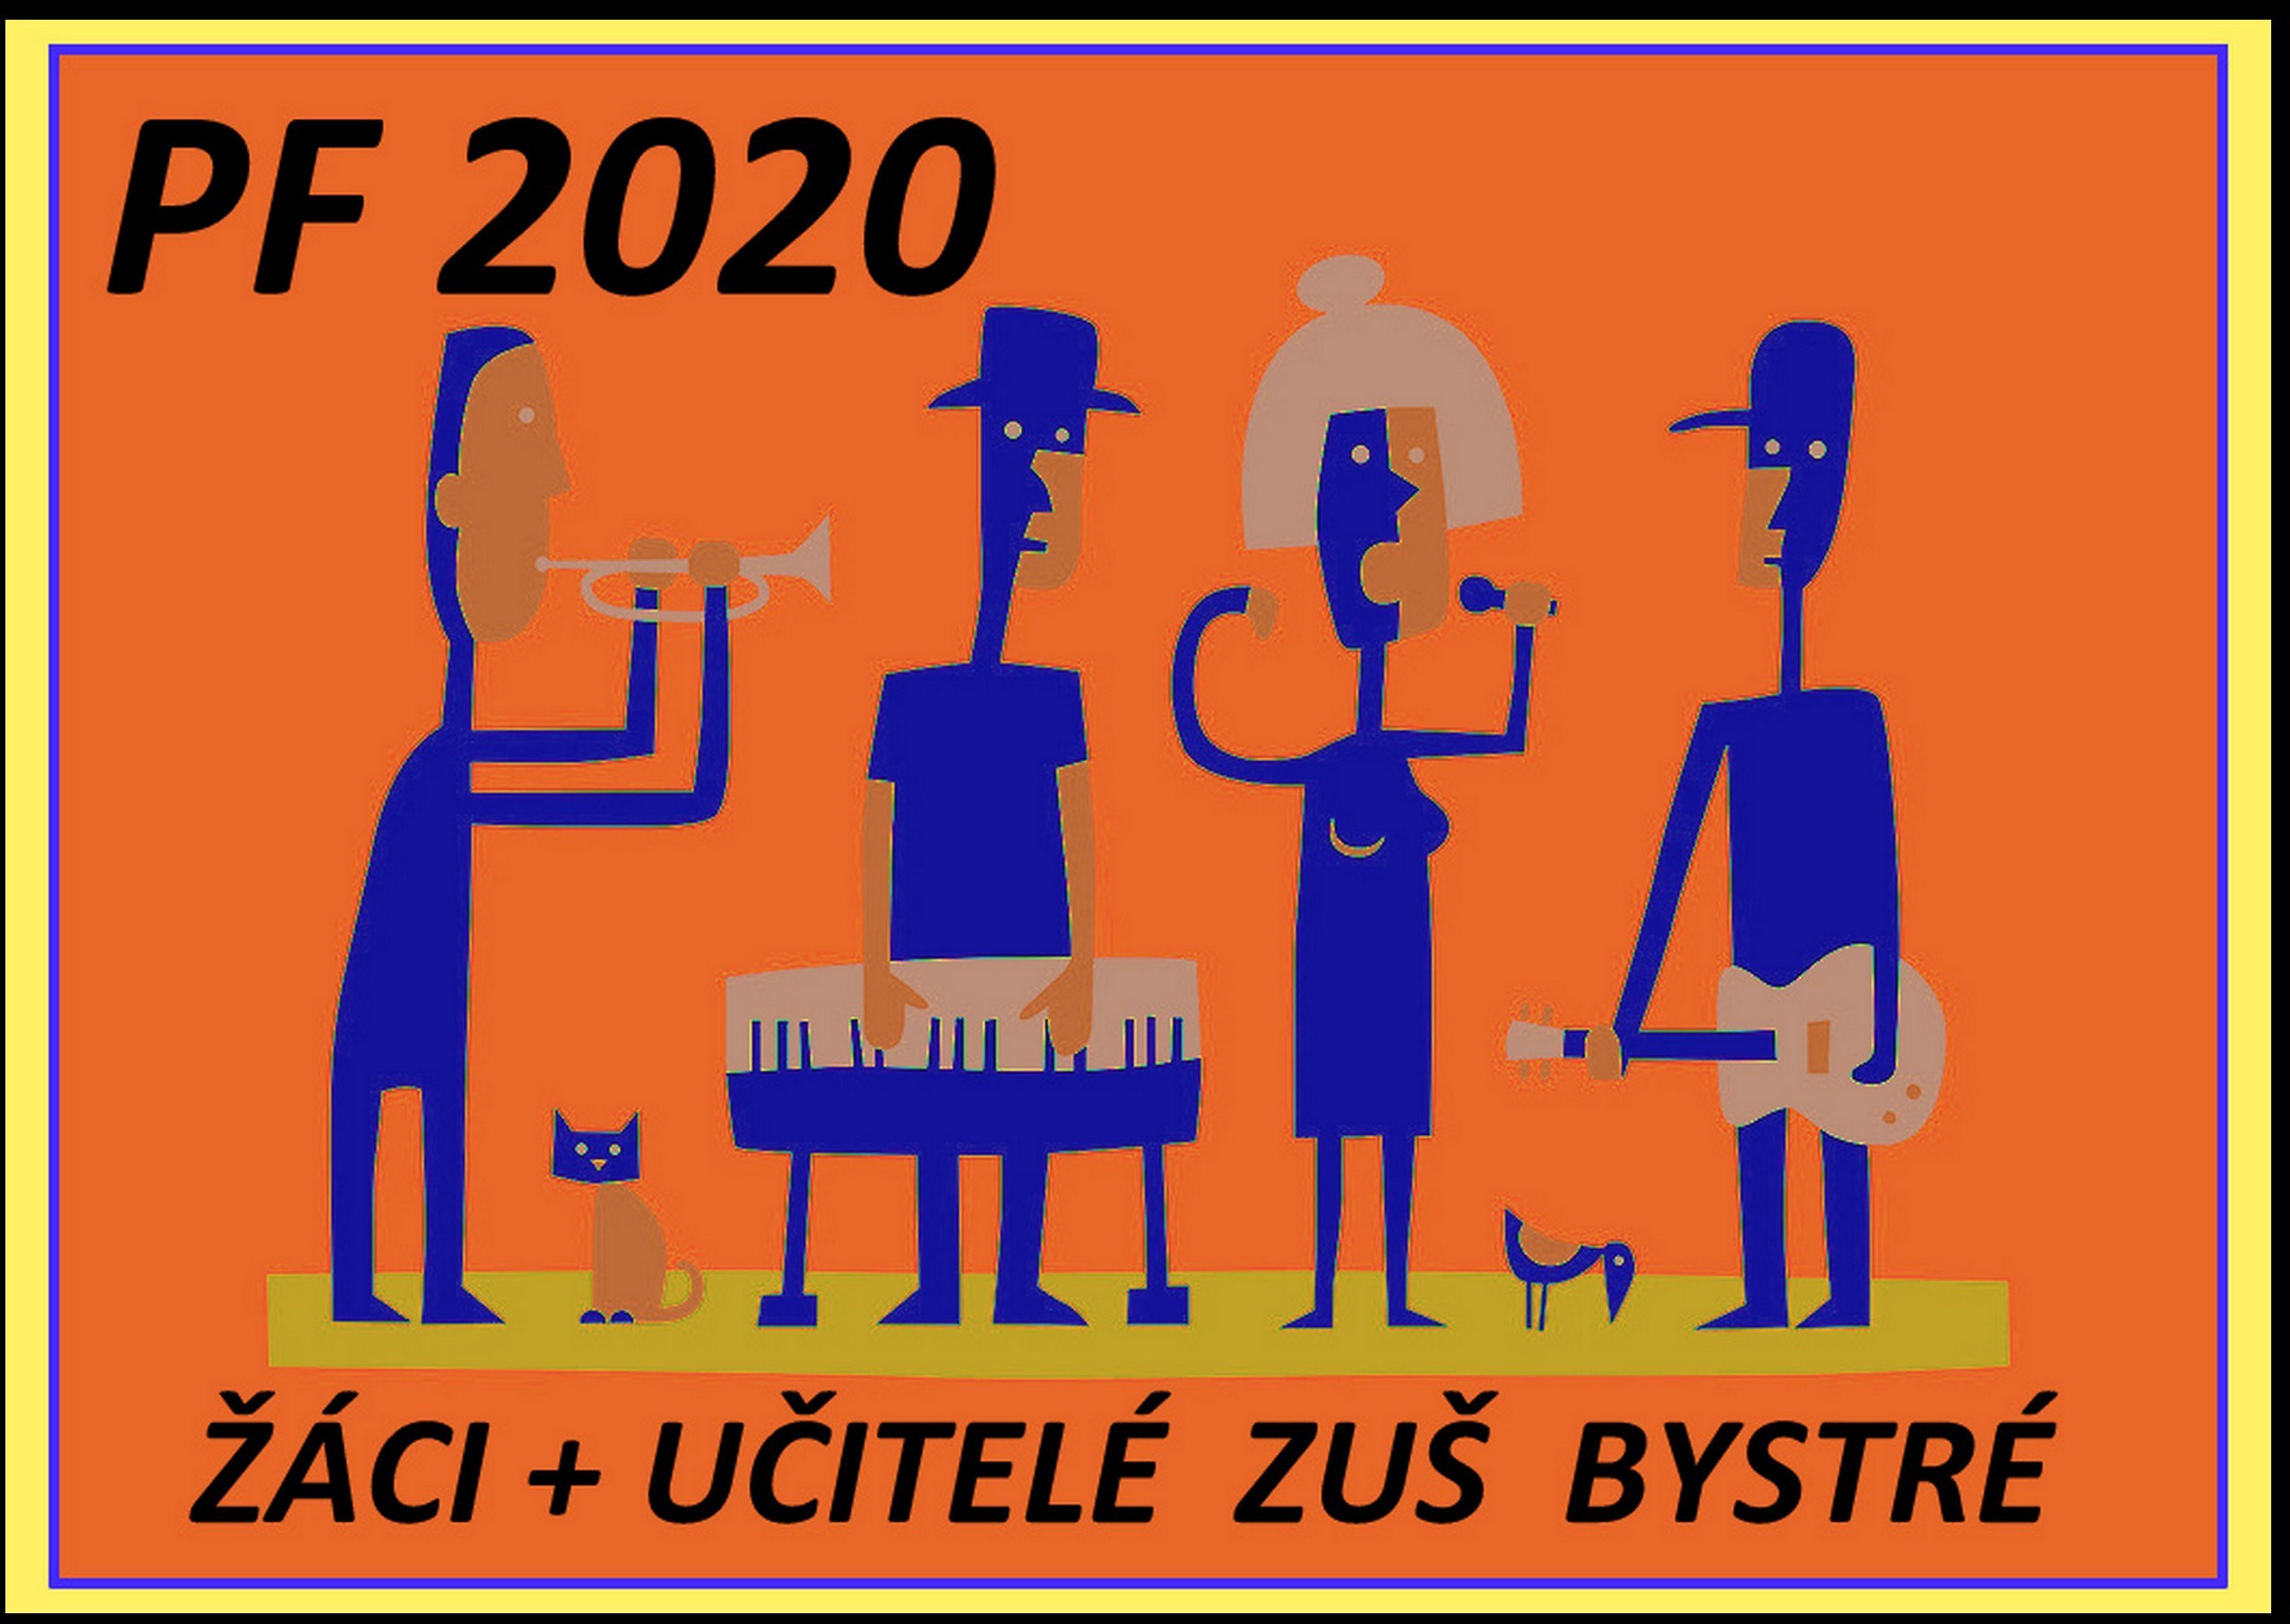 pf-zus-bystre-2020.jpg